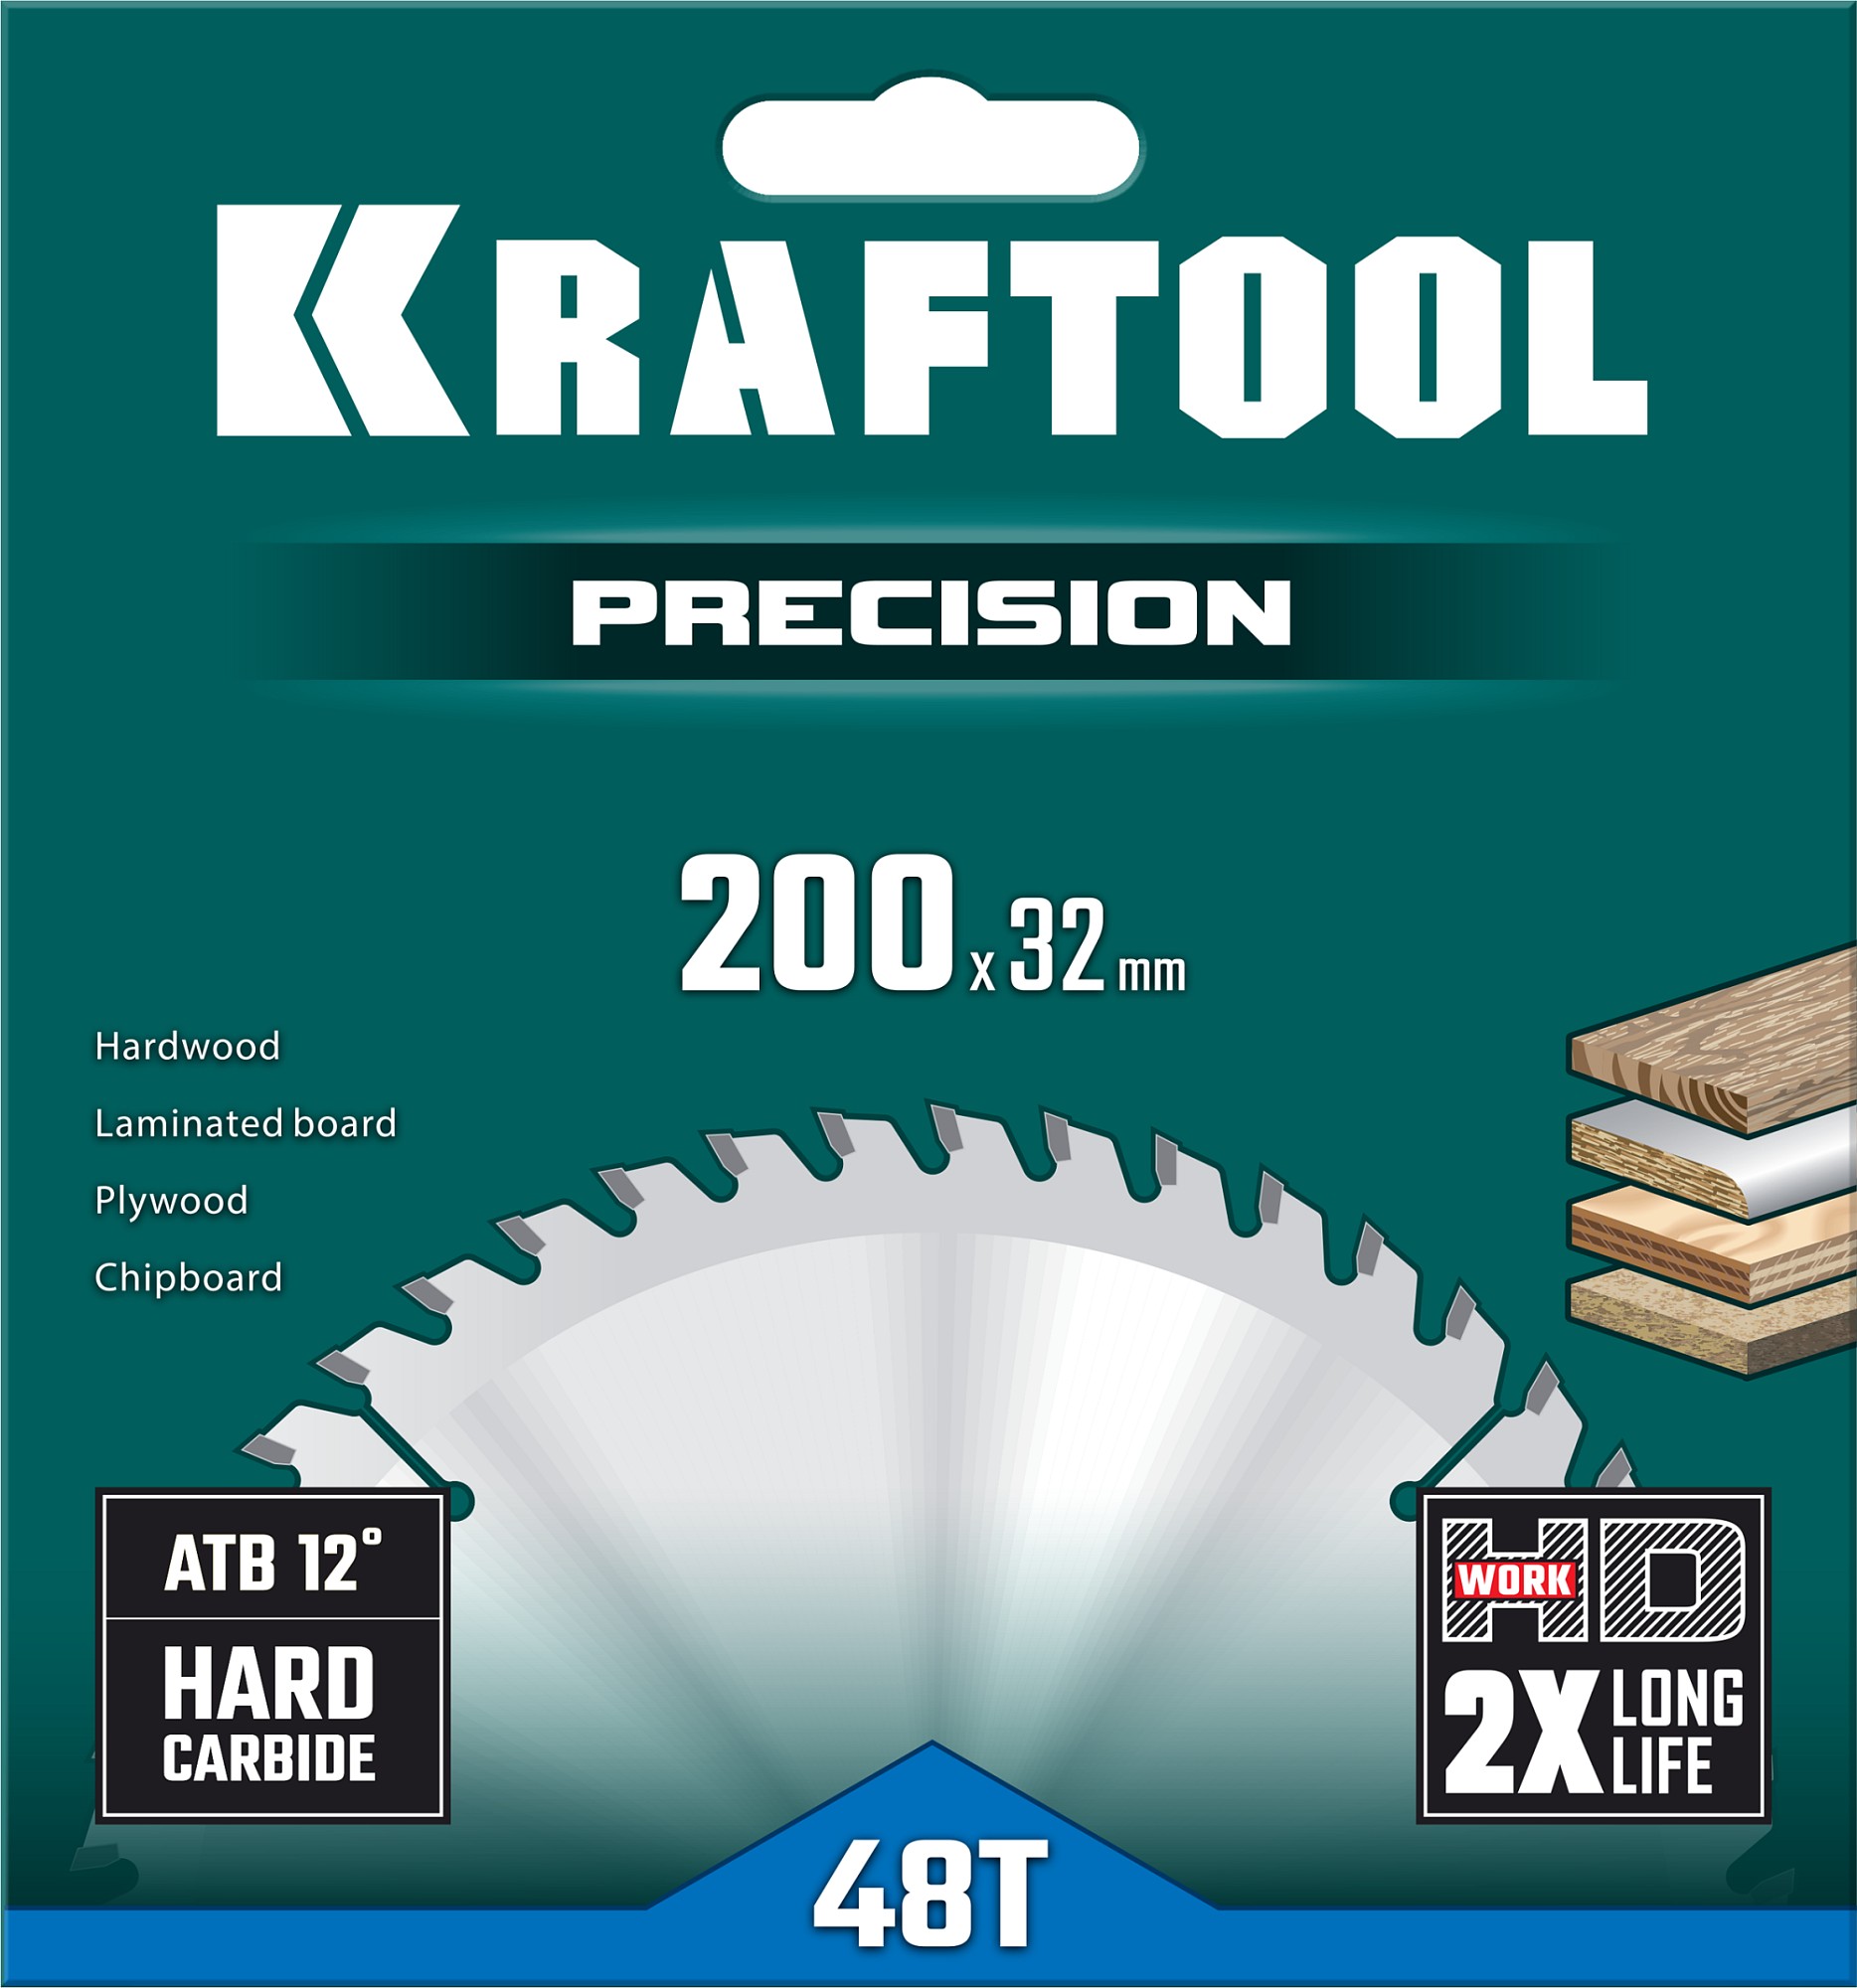 KRAFTOOL Precision, 200 х 32 мм, 48Т, пильный диск по дереву (36952-200-32)